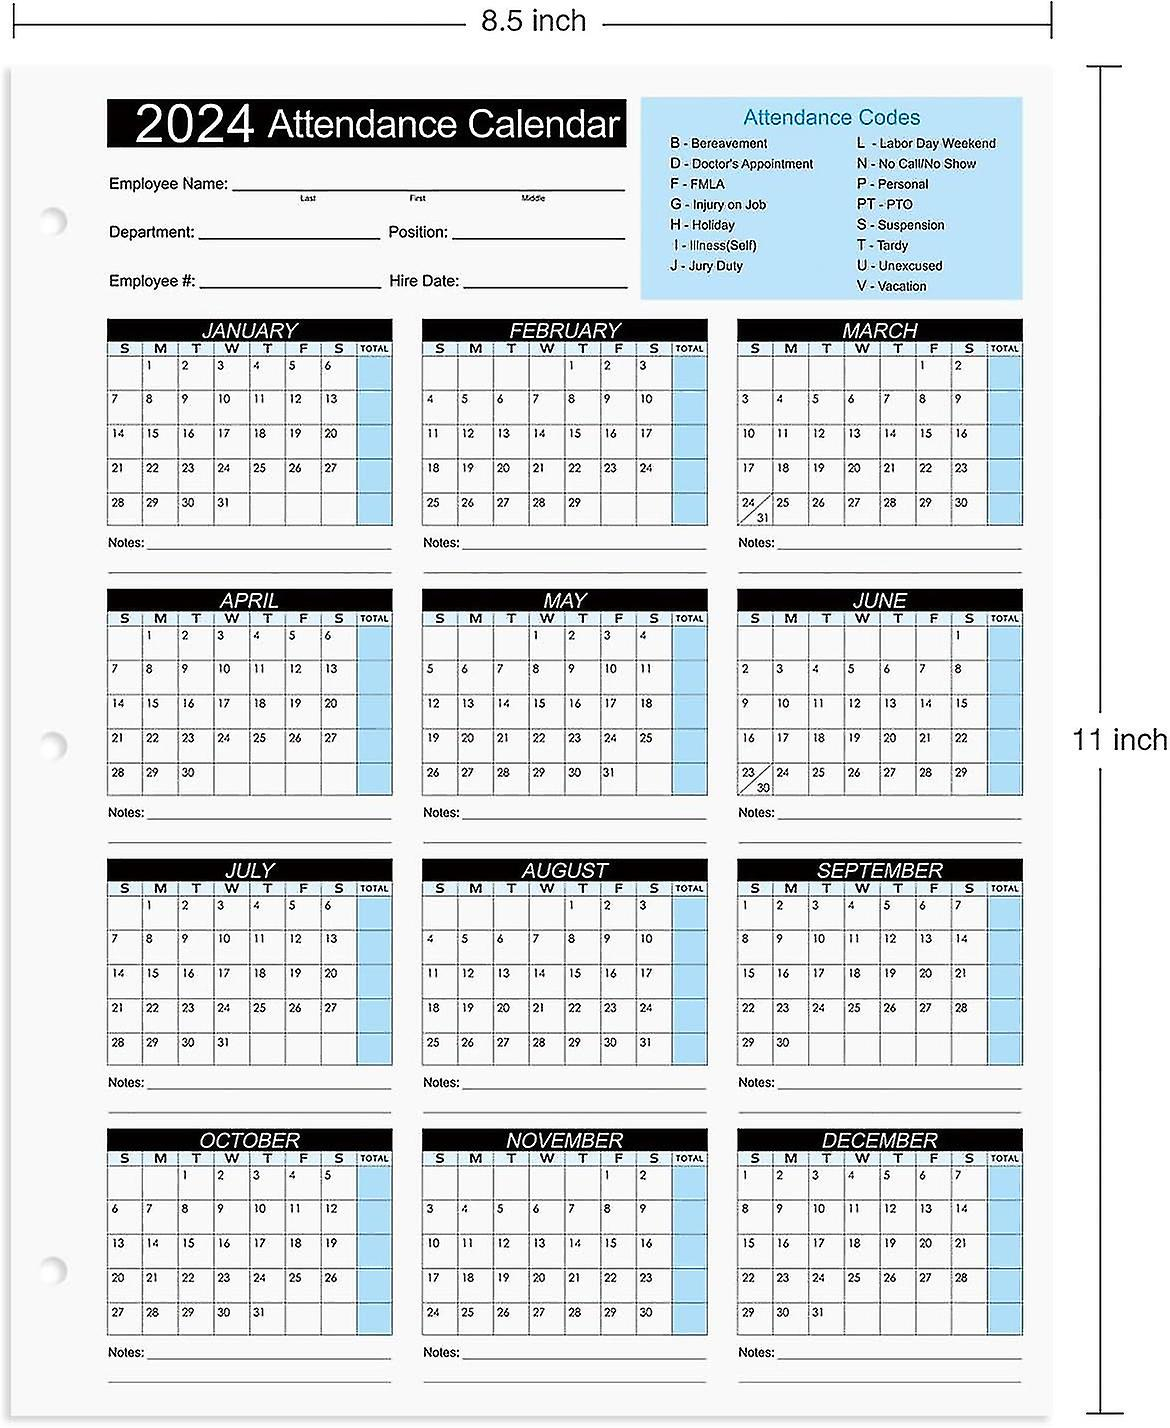 2024 Attendance Calendar Work Tracker - Cards On 8.5 X 11 within 2024 Attendance Calendar